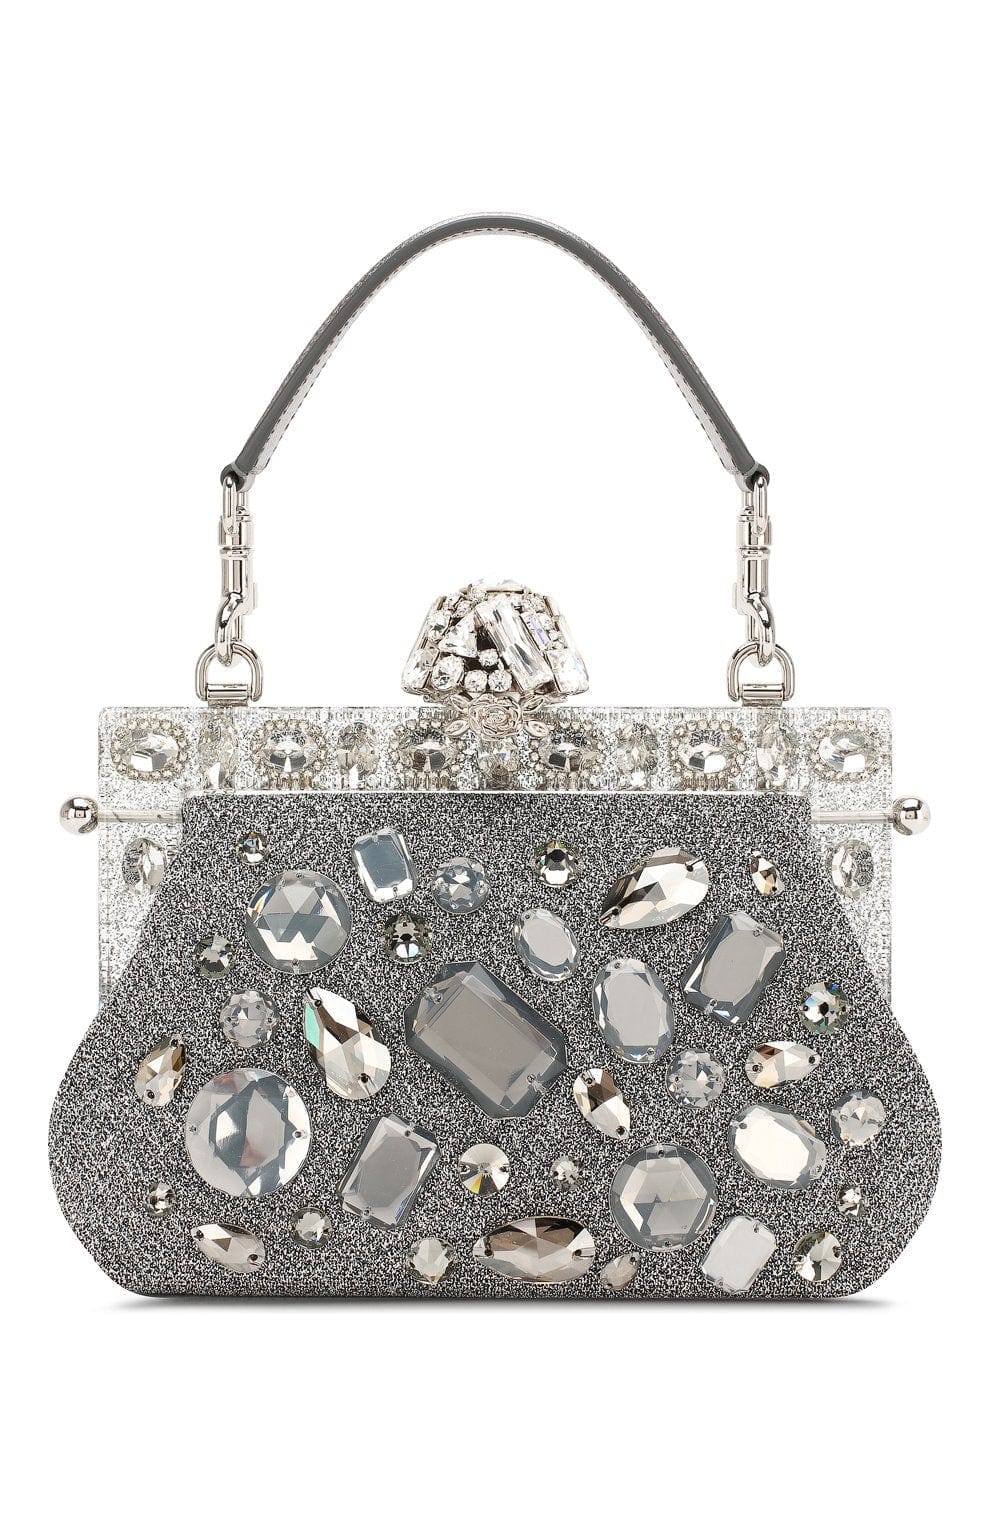 Dolce & Gabbana Vanda Crystal Embellished Clutch Bag